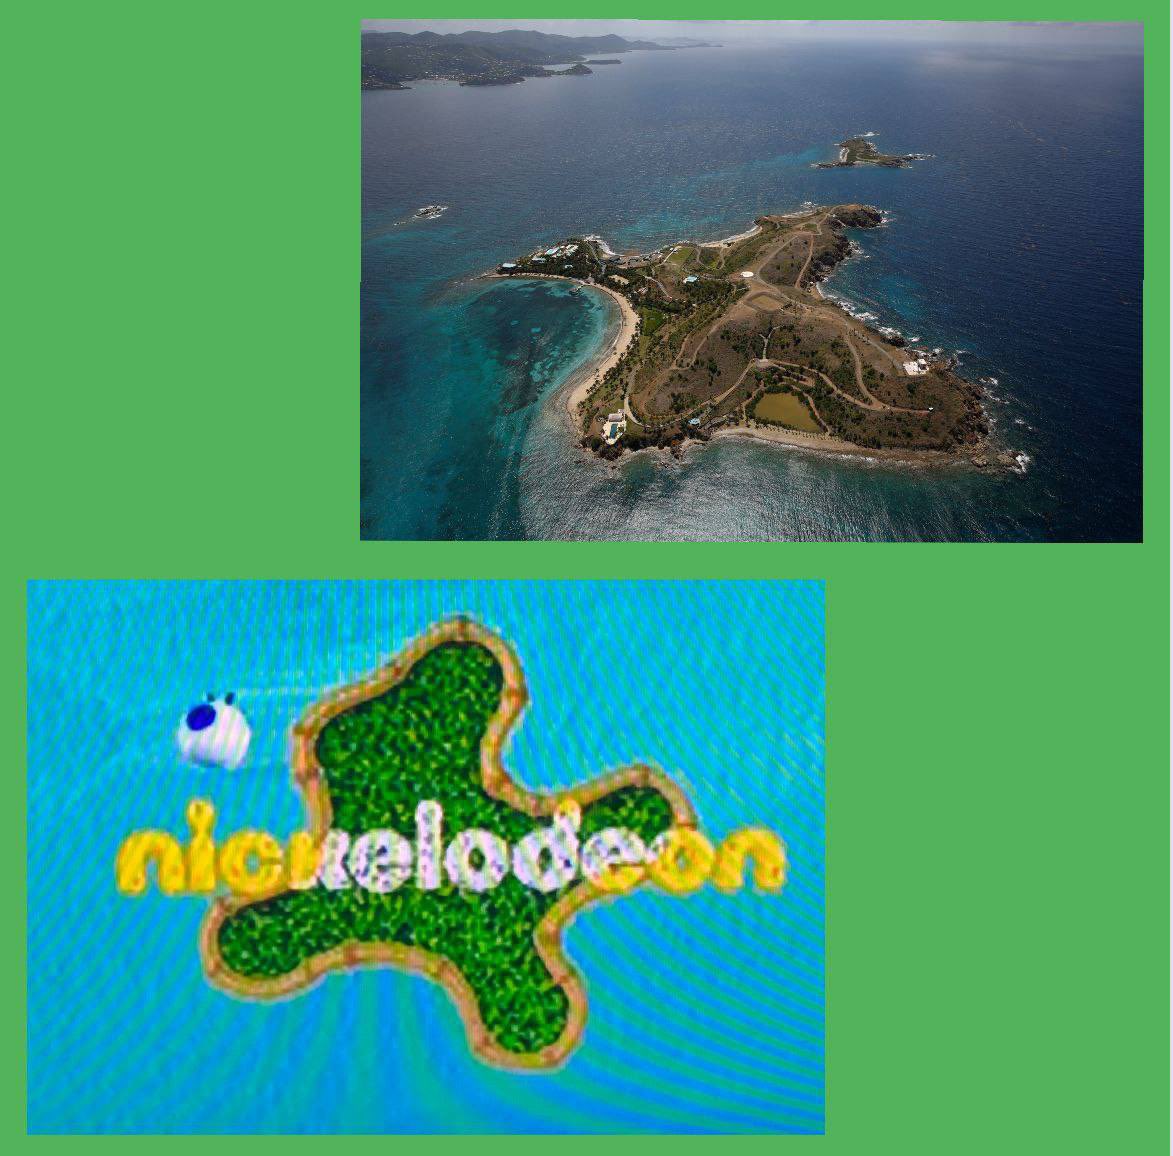 Epstein Adası ile çocuklara özel
Tv kanalı Nickelodeon’un sembolü arasındaki benzerlik sadece bir tesadüf…